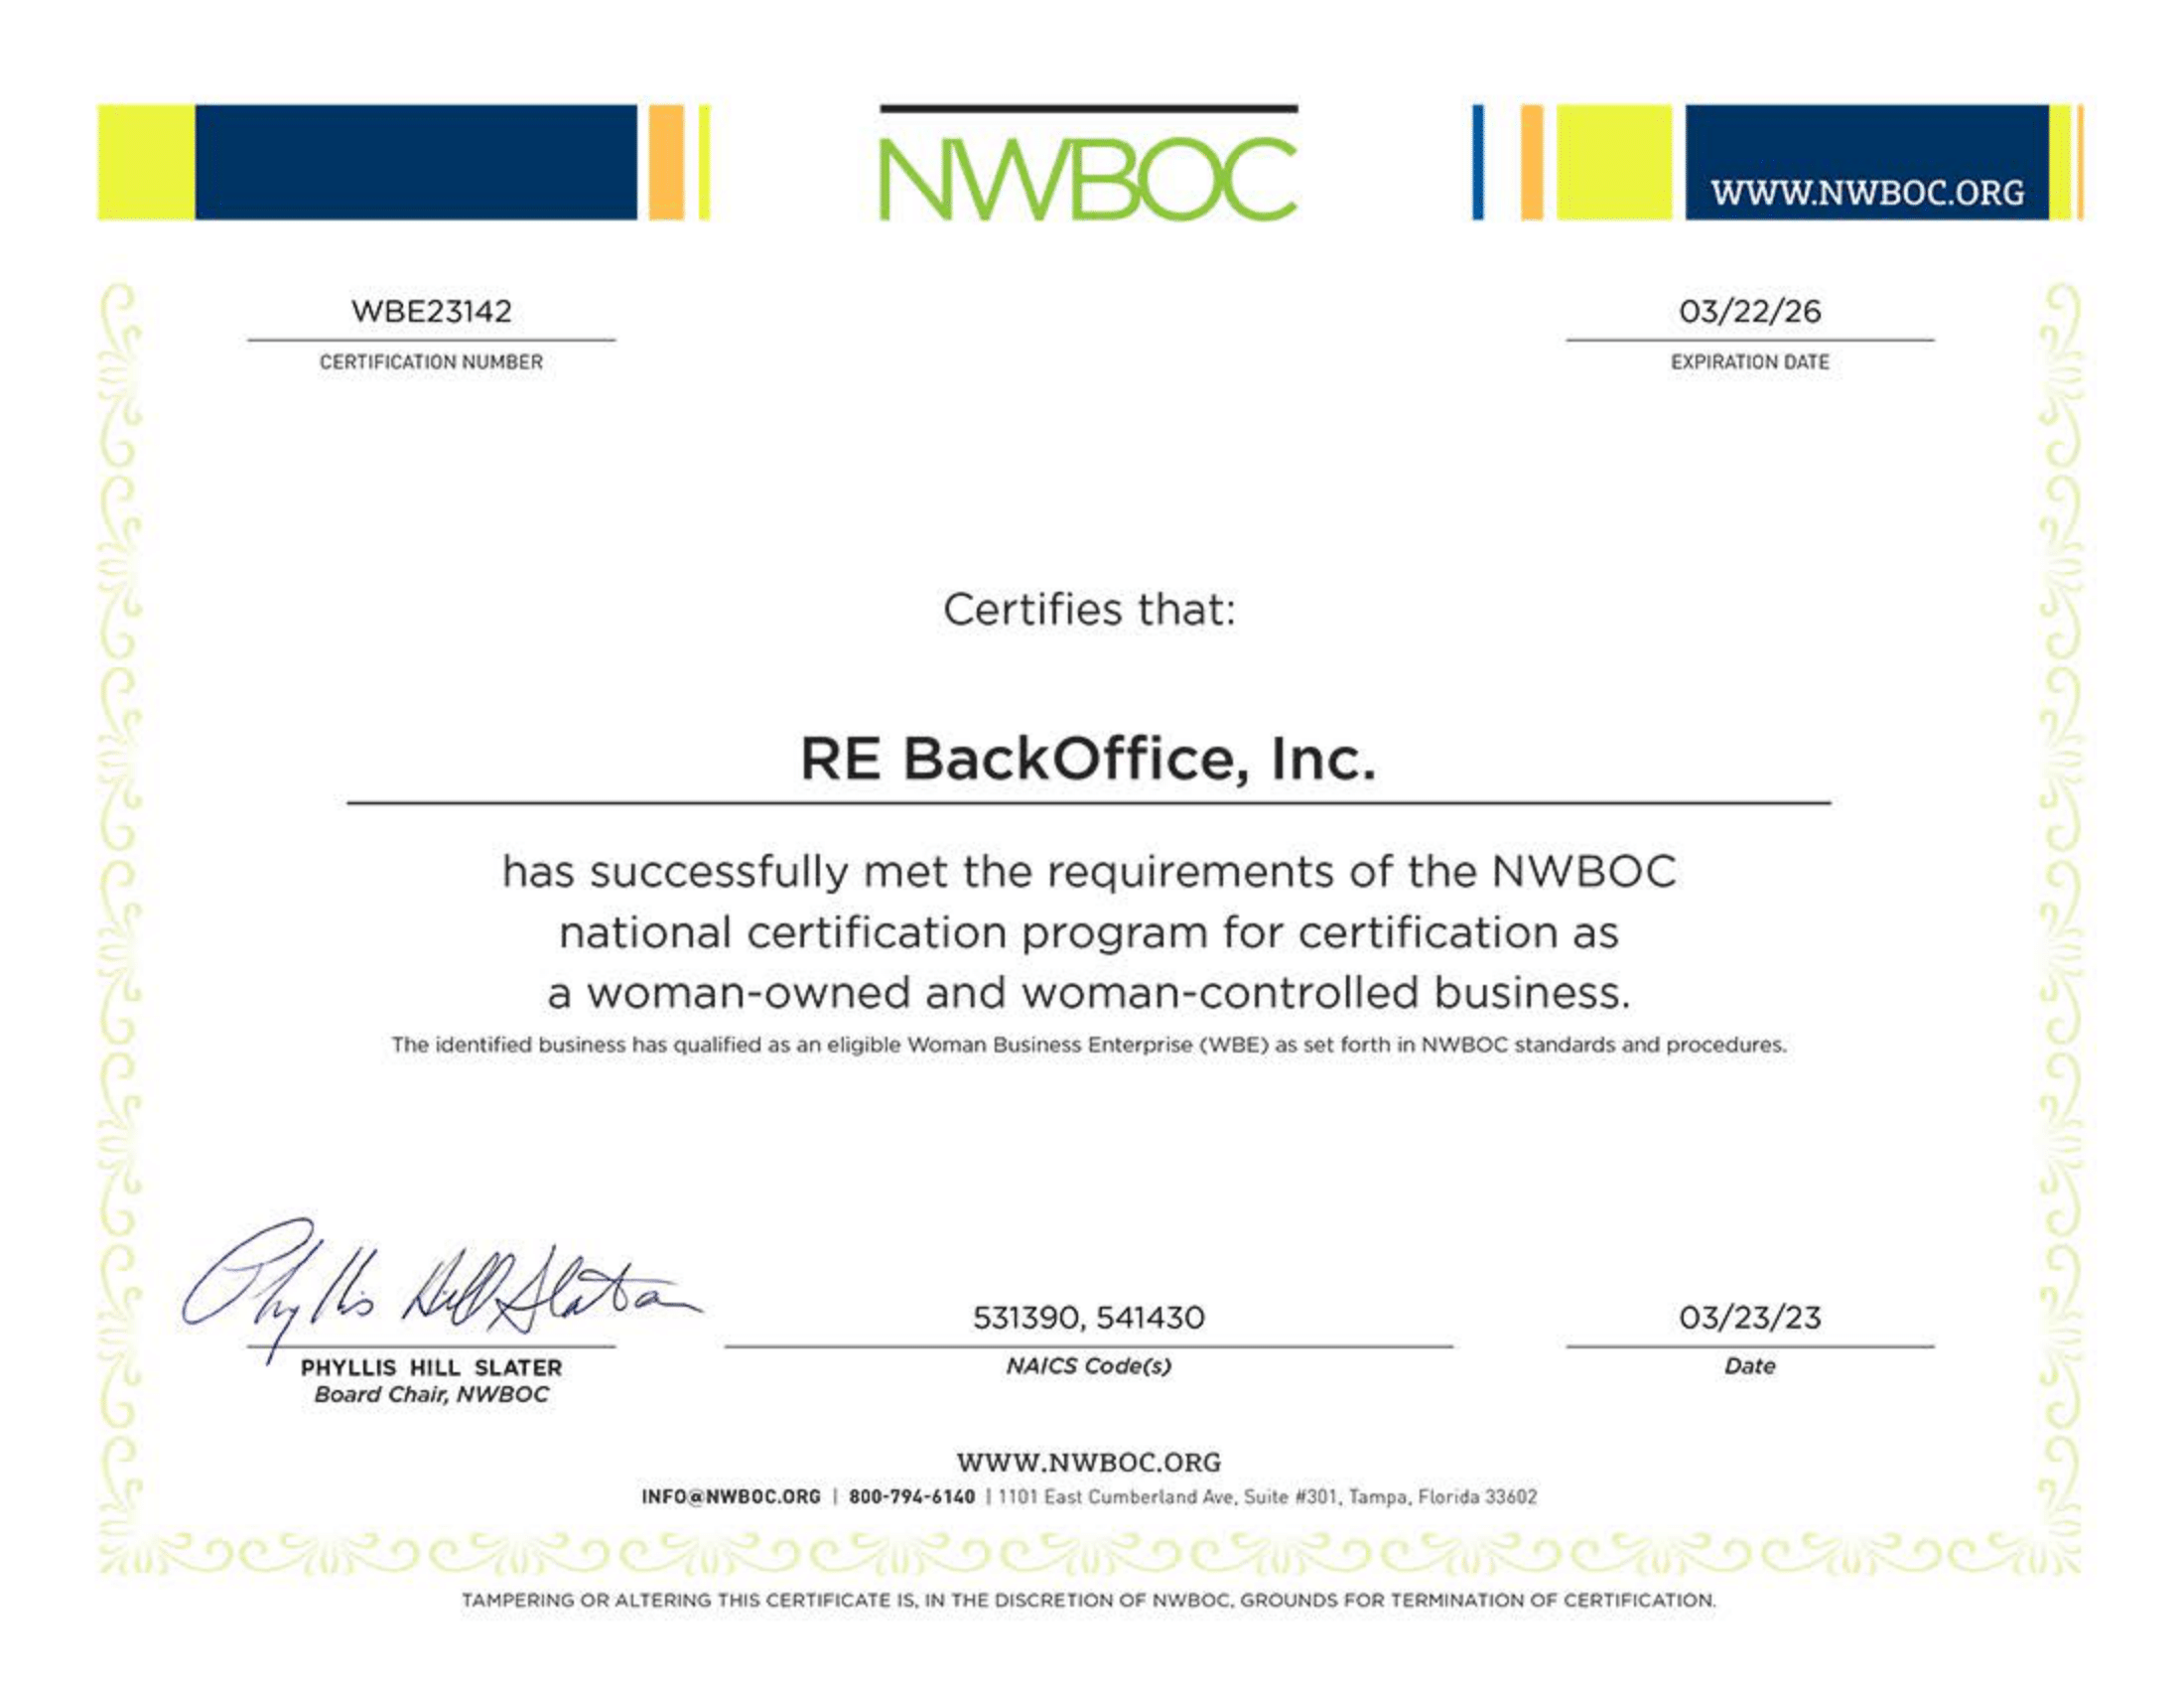 nwboc, nwboc certificate rebackoffice